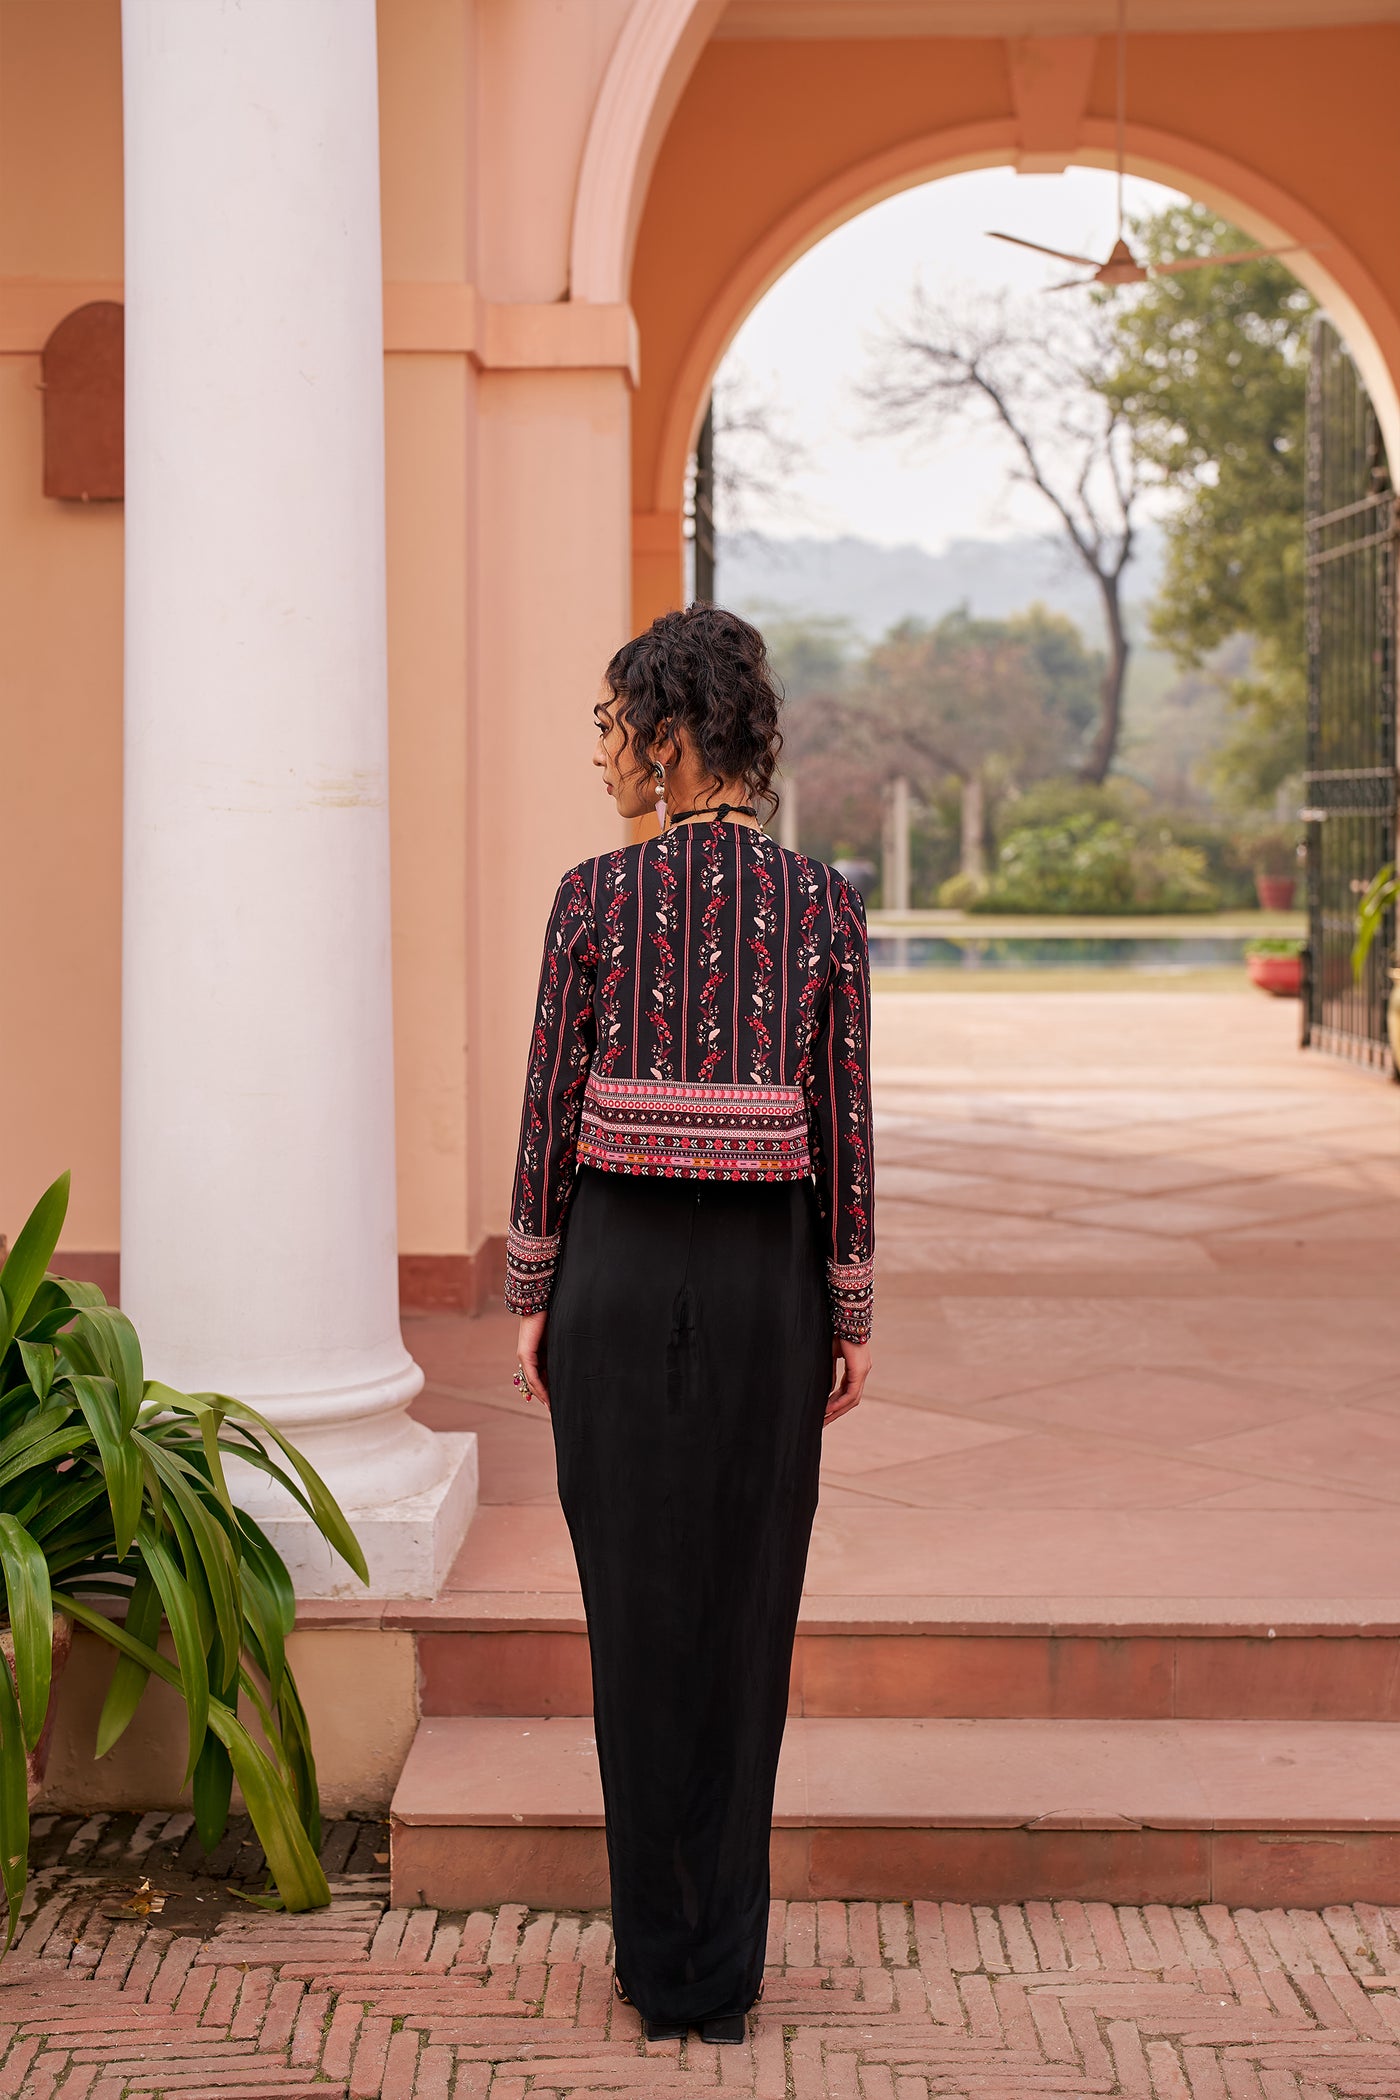 Chhavvi Aggarwal Black Short Jacket With Inner And Draped Skirt indian designer wear online shopping melange singapore